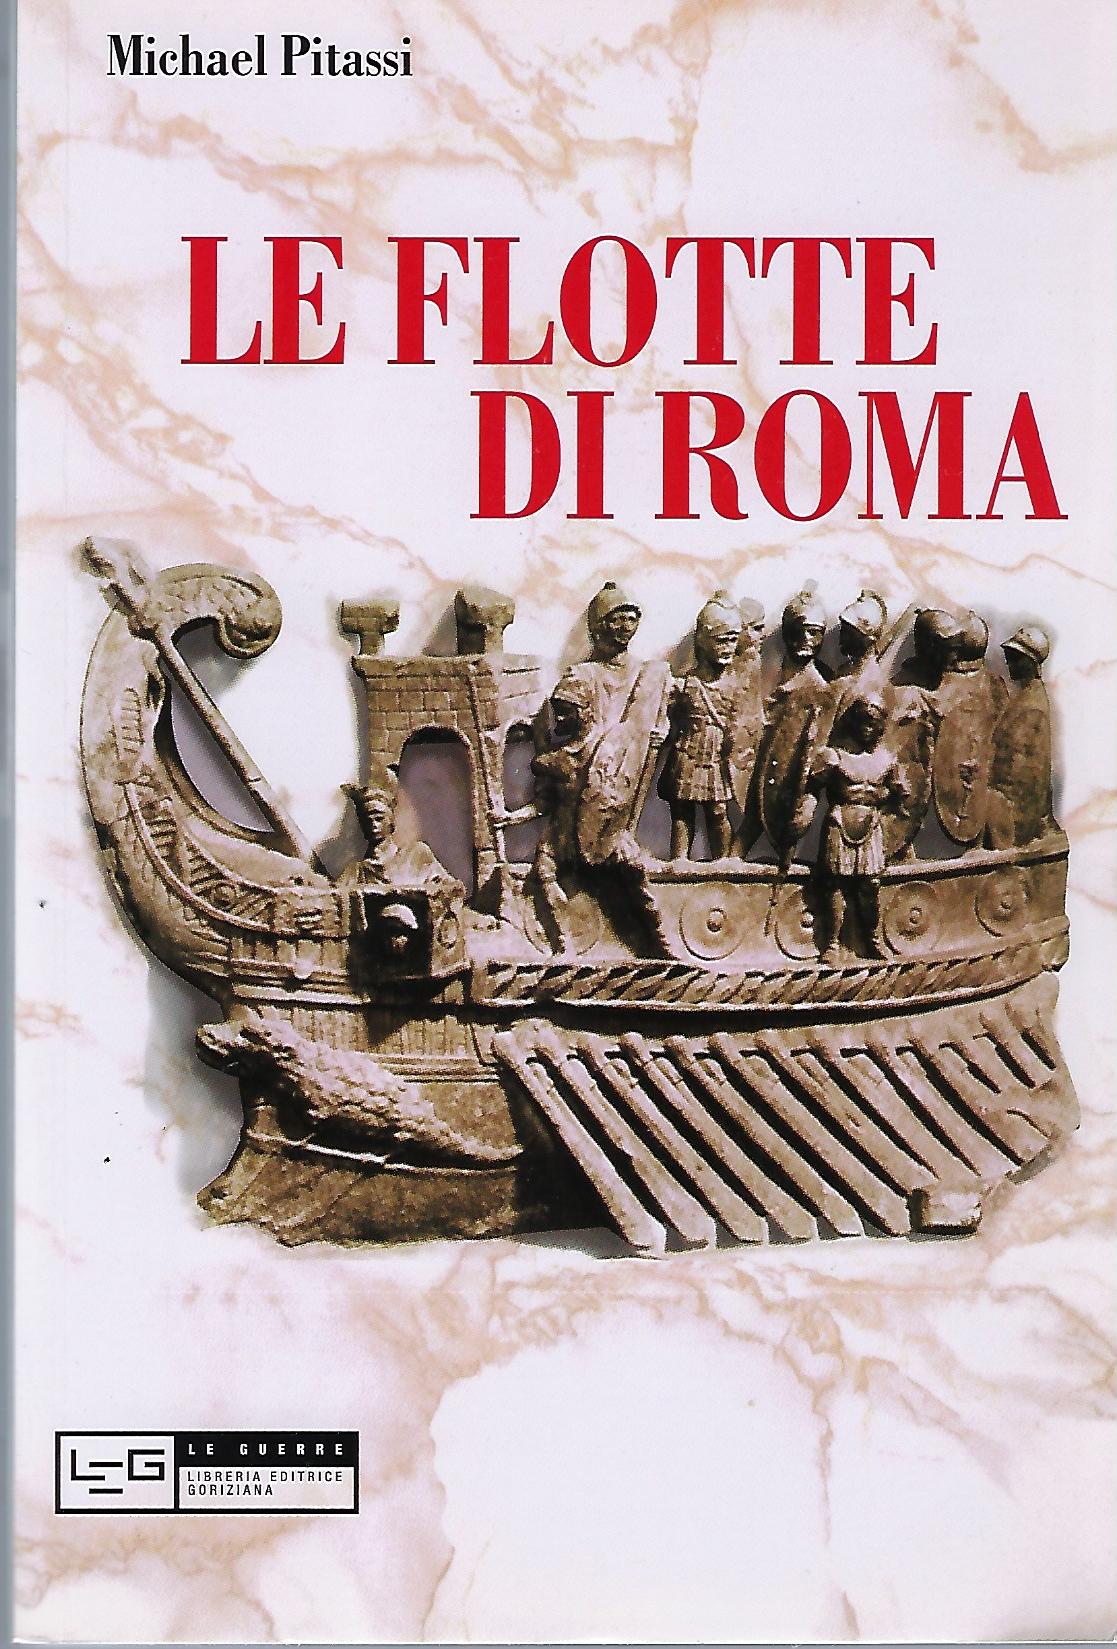 "Le flotte di Roma"